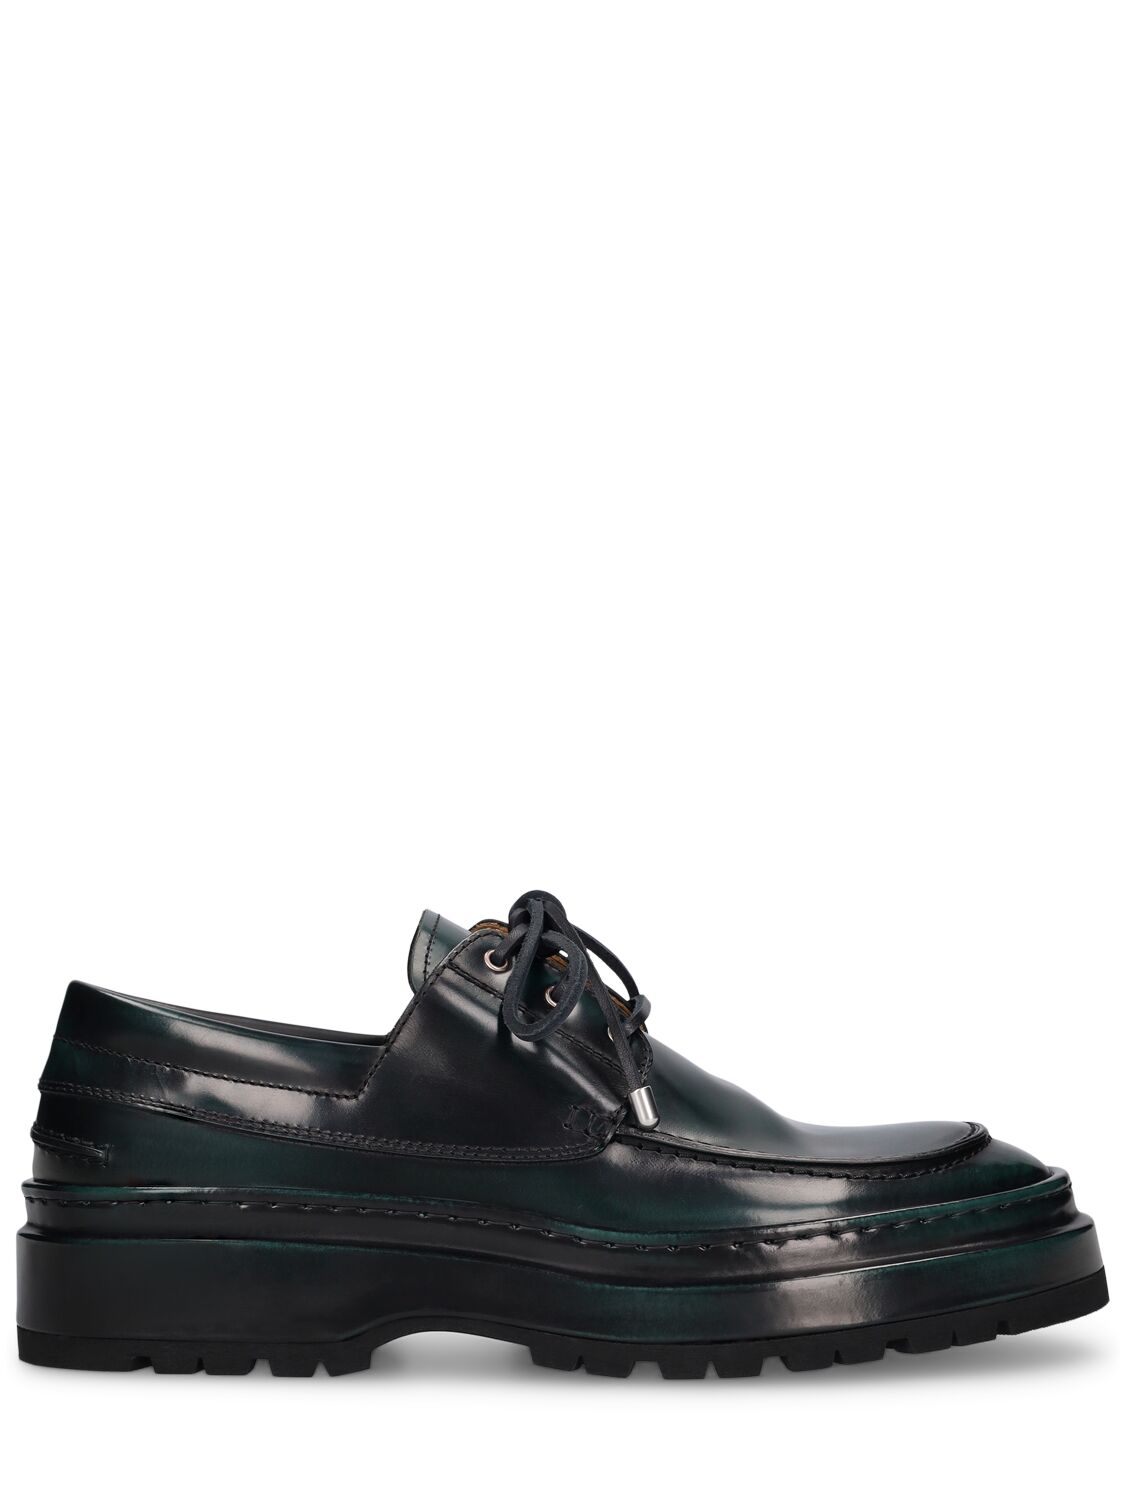 Jacquemus Les Bateau Pavane Leather Lace-up Shoes In Black,green